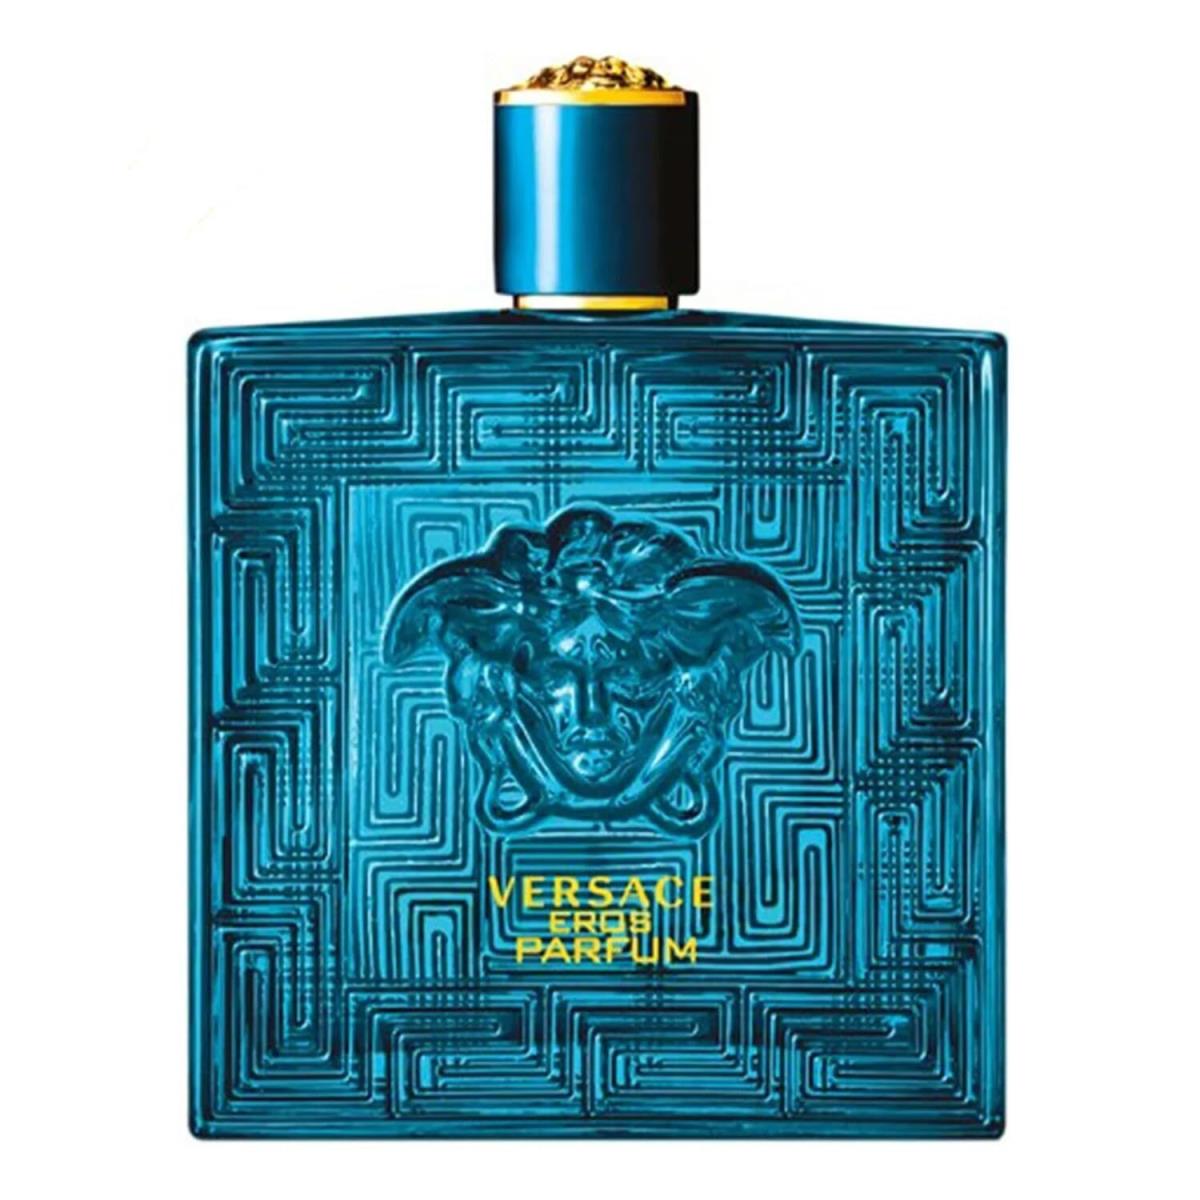 Versace Eros Eau de Parfum For Men 6.7 fl oz